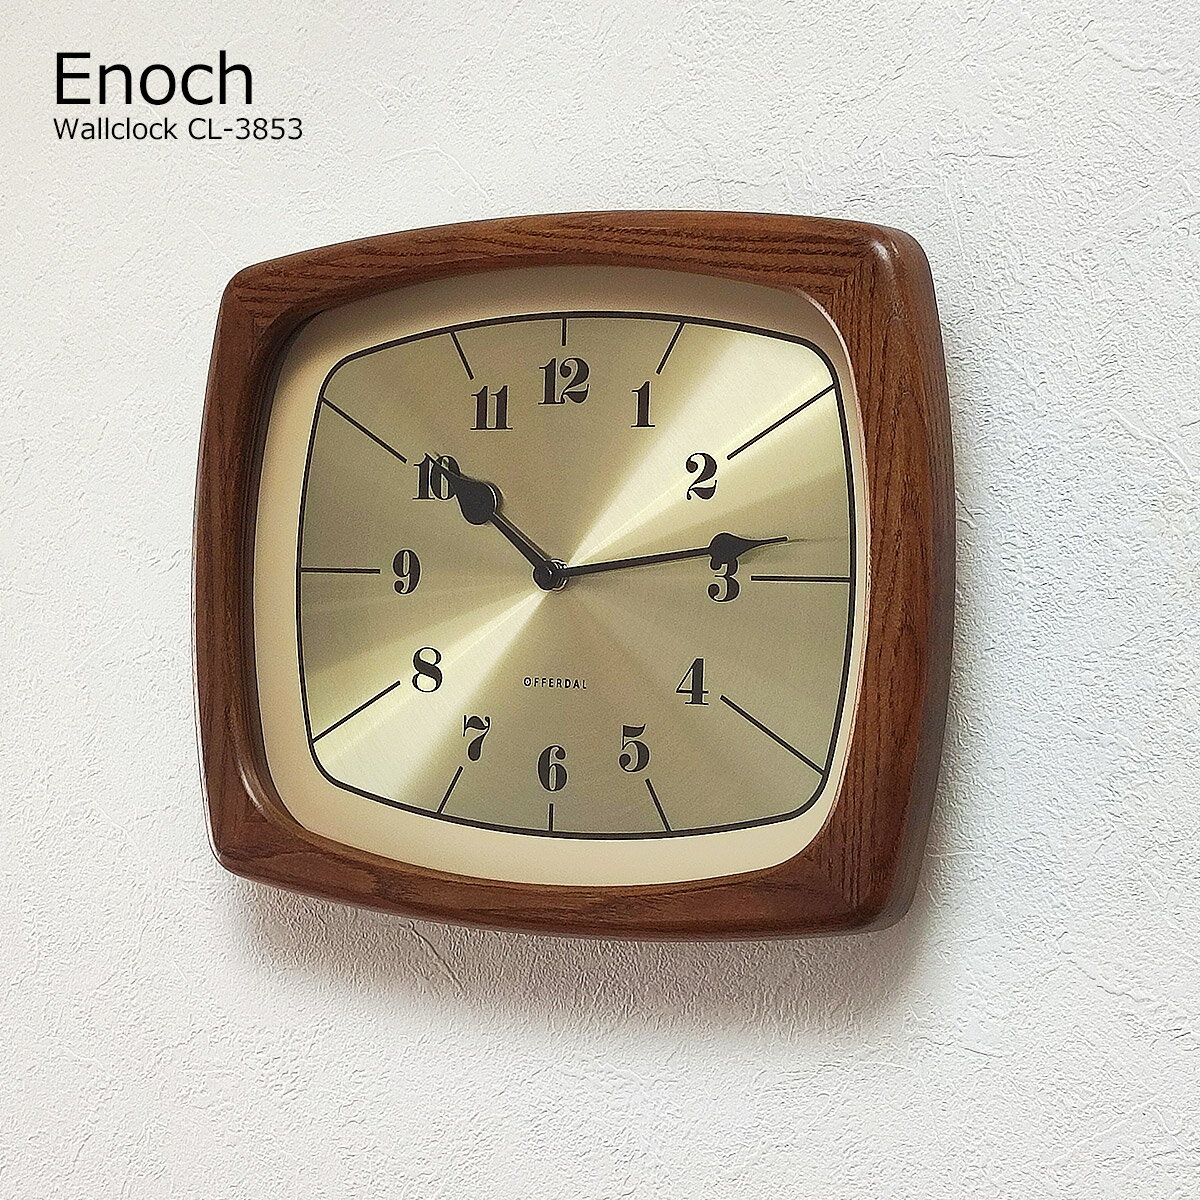 壁掛け時計 おしゃれ 時計 壁掛け 北欧 掛け時計 イーノク Enoch CL-3853 モダン レトロ アンティーク ヴィンテージ インテリア 木製 リビング ダイニング 昭和 寝室 静音 静かな 音がしない インターフォルム ゴールド 四角